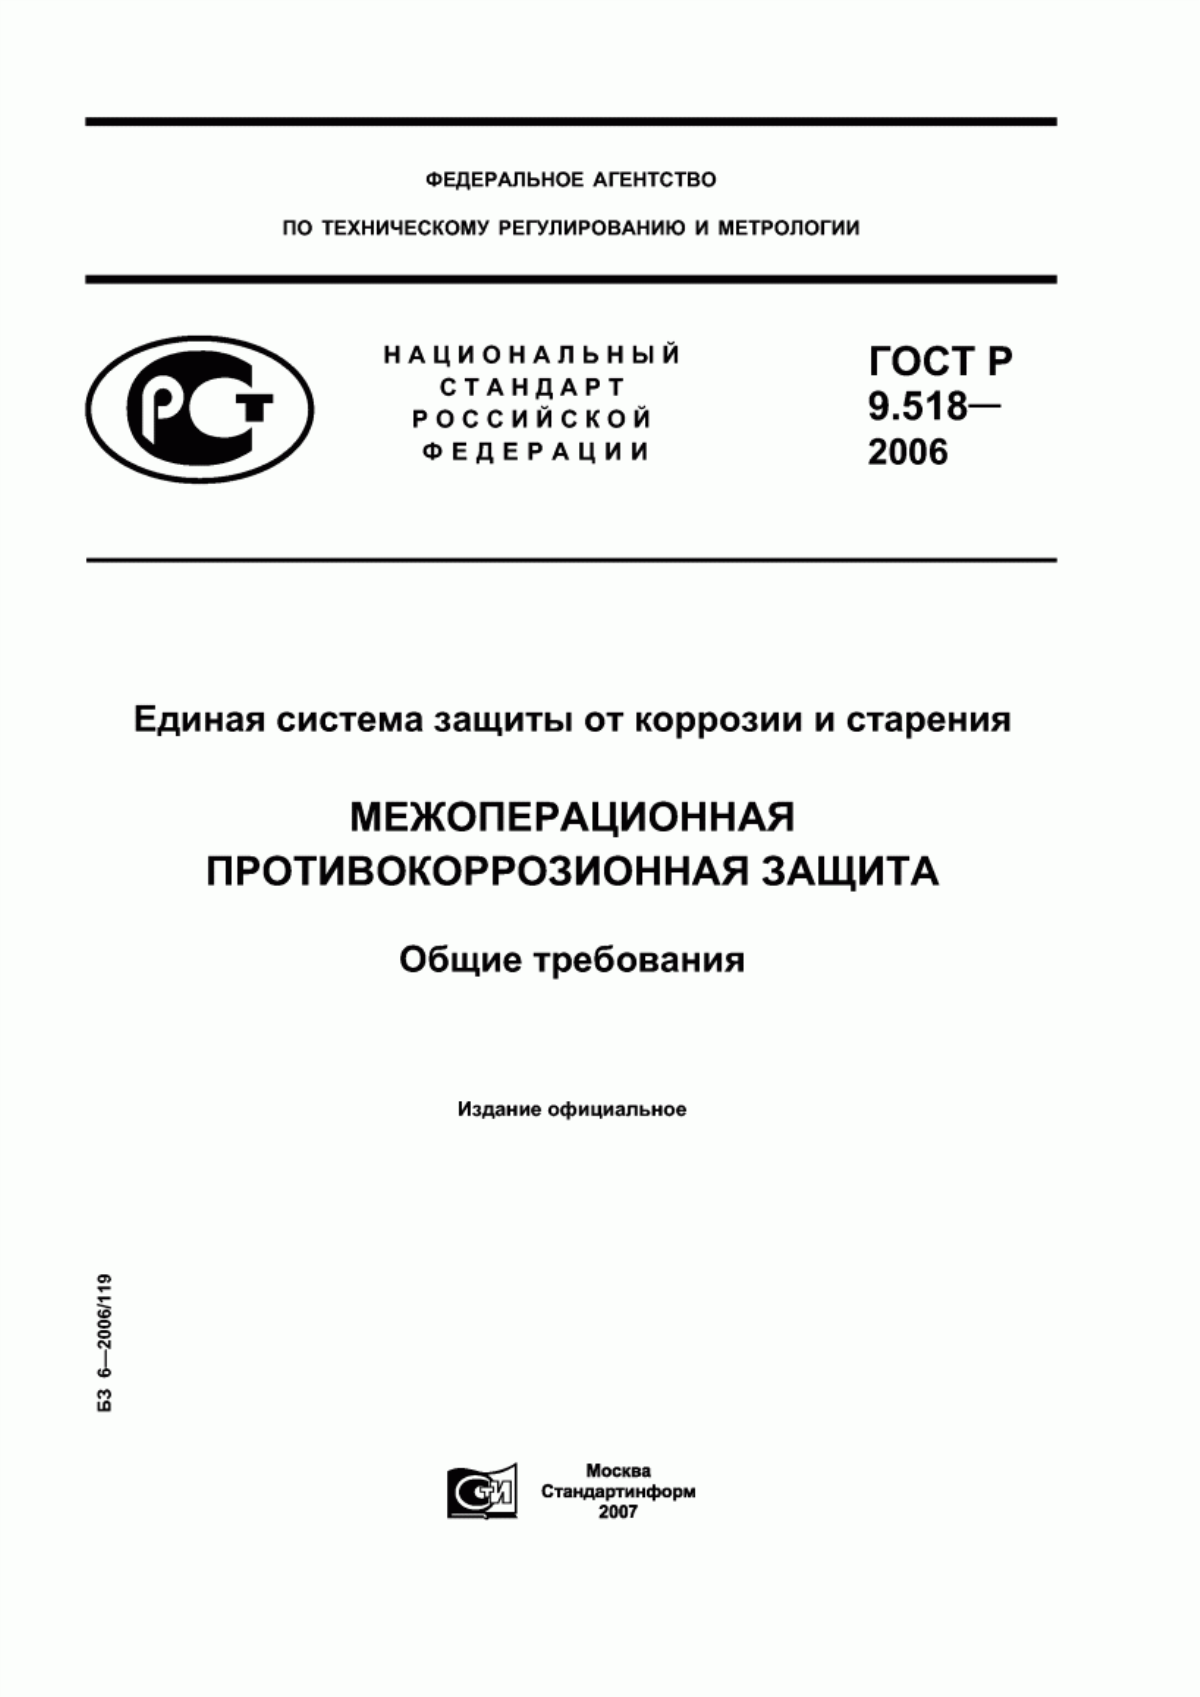 ГОСТ Р 9.518-2006 Единая система защиты от коррозии и старения. Межоперационная противокоррозионная защита. Общие требования